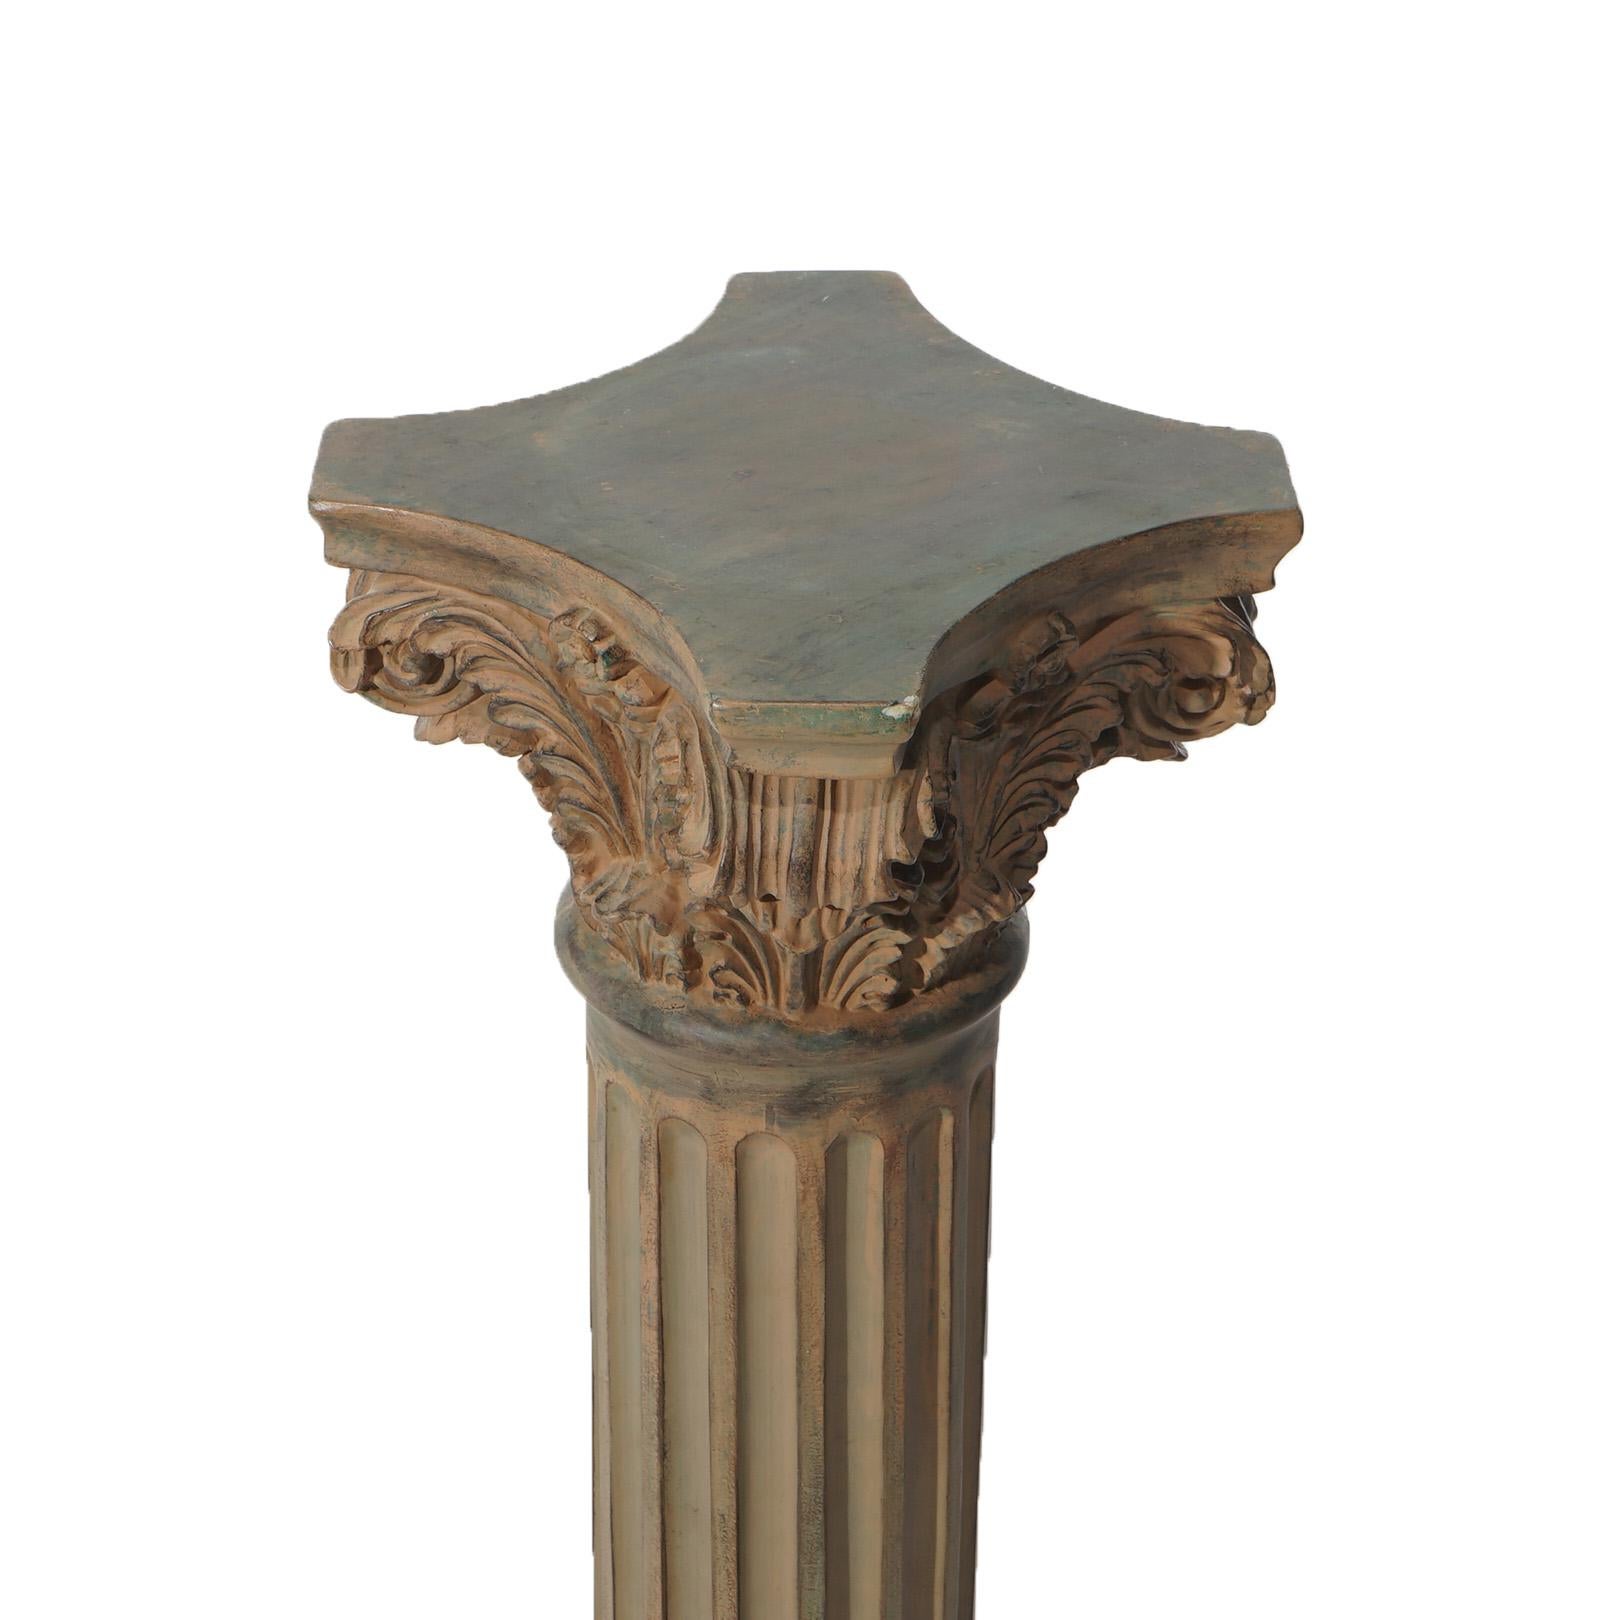 Pair Neoclassical Corinthian Column Form Composite Sculpture Pedestals 20thC For Sale 1